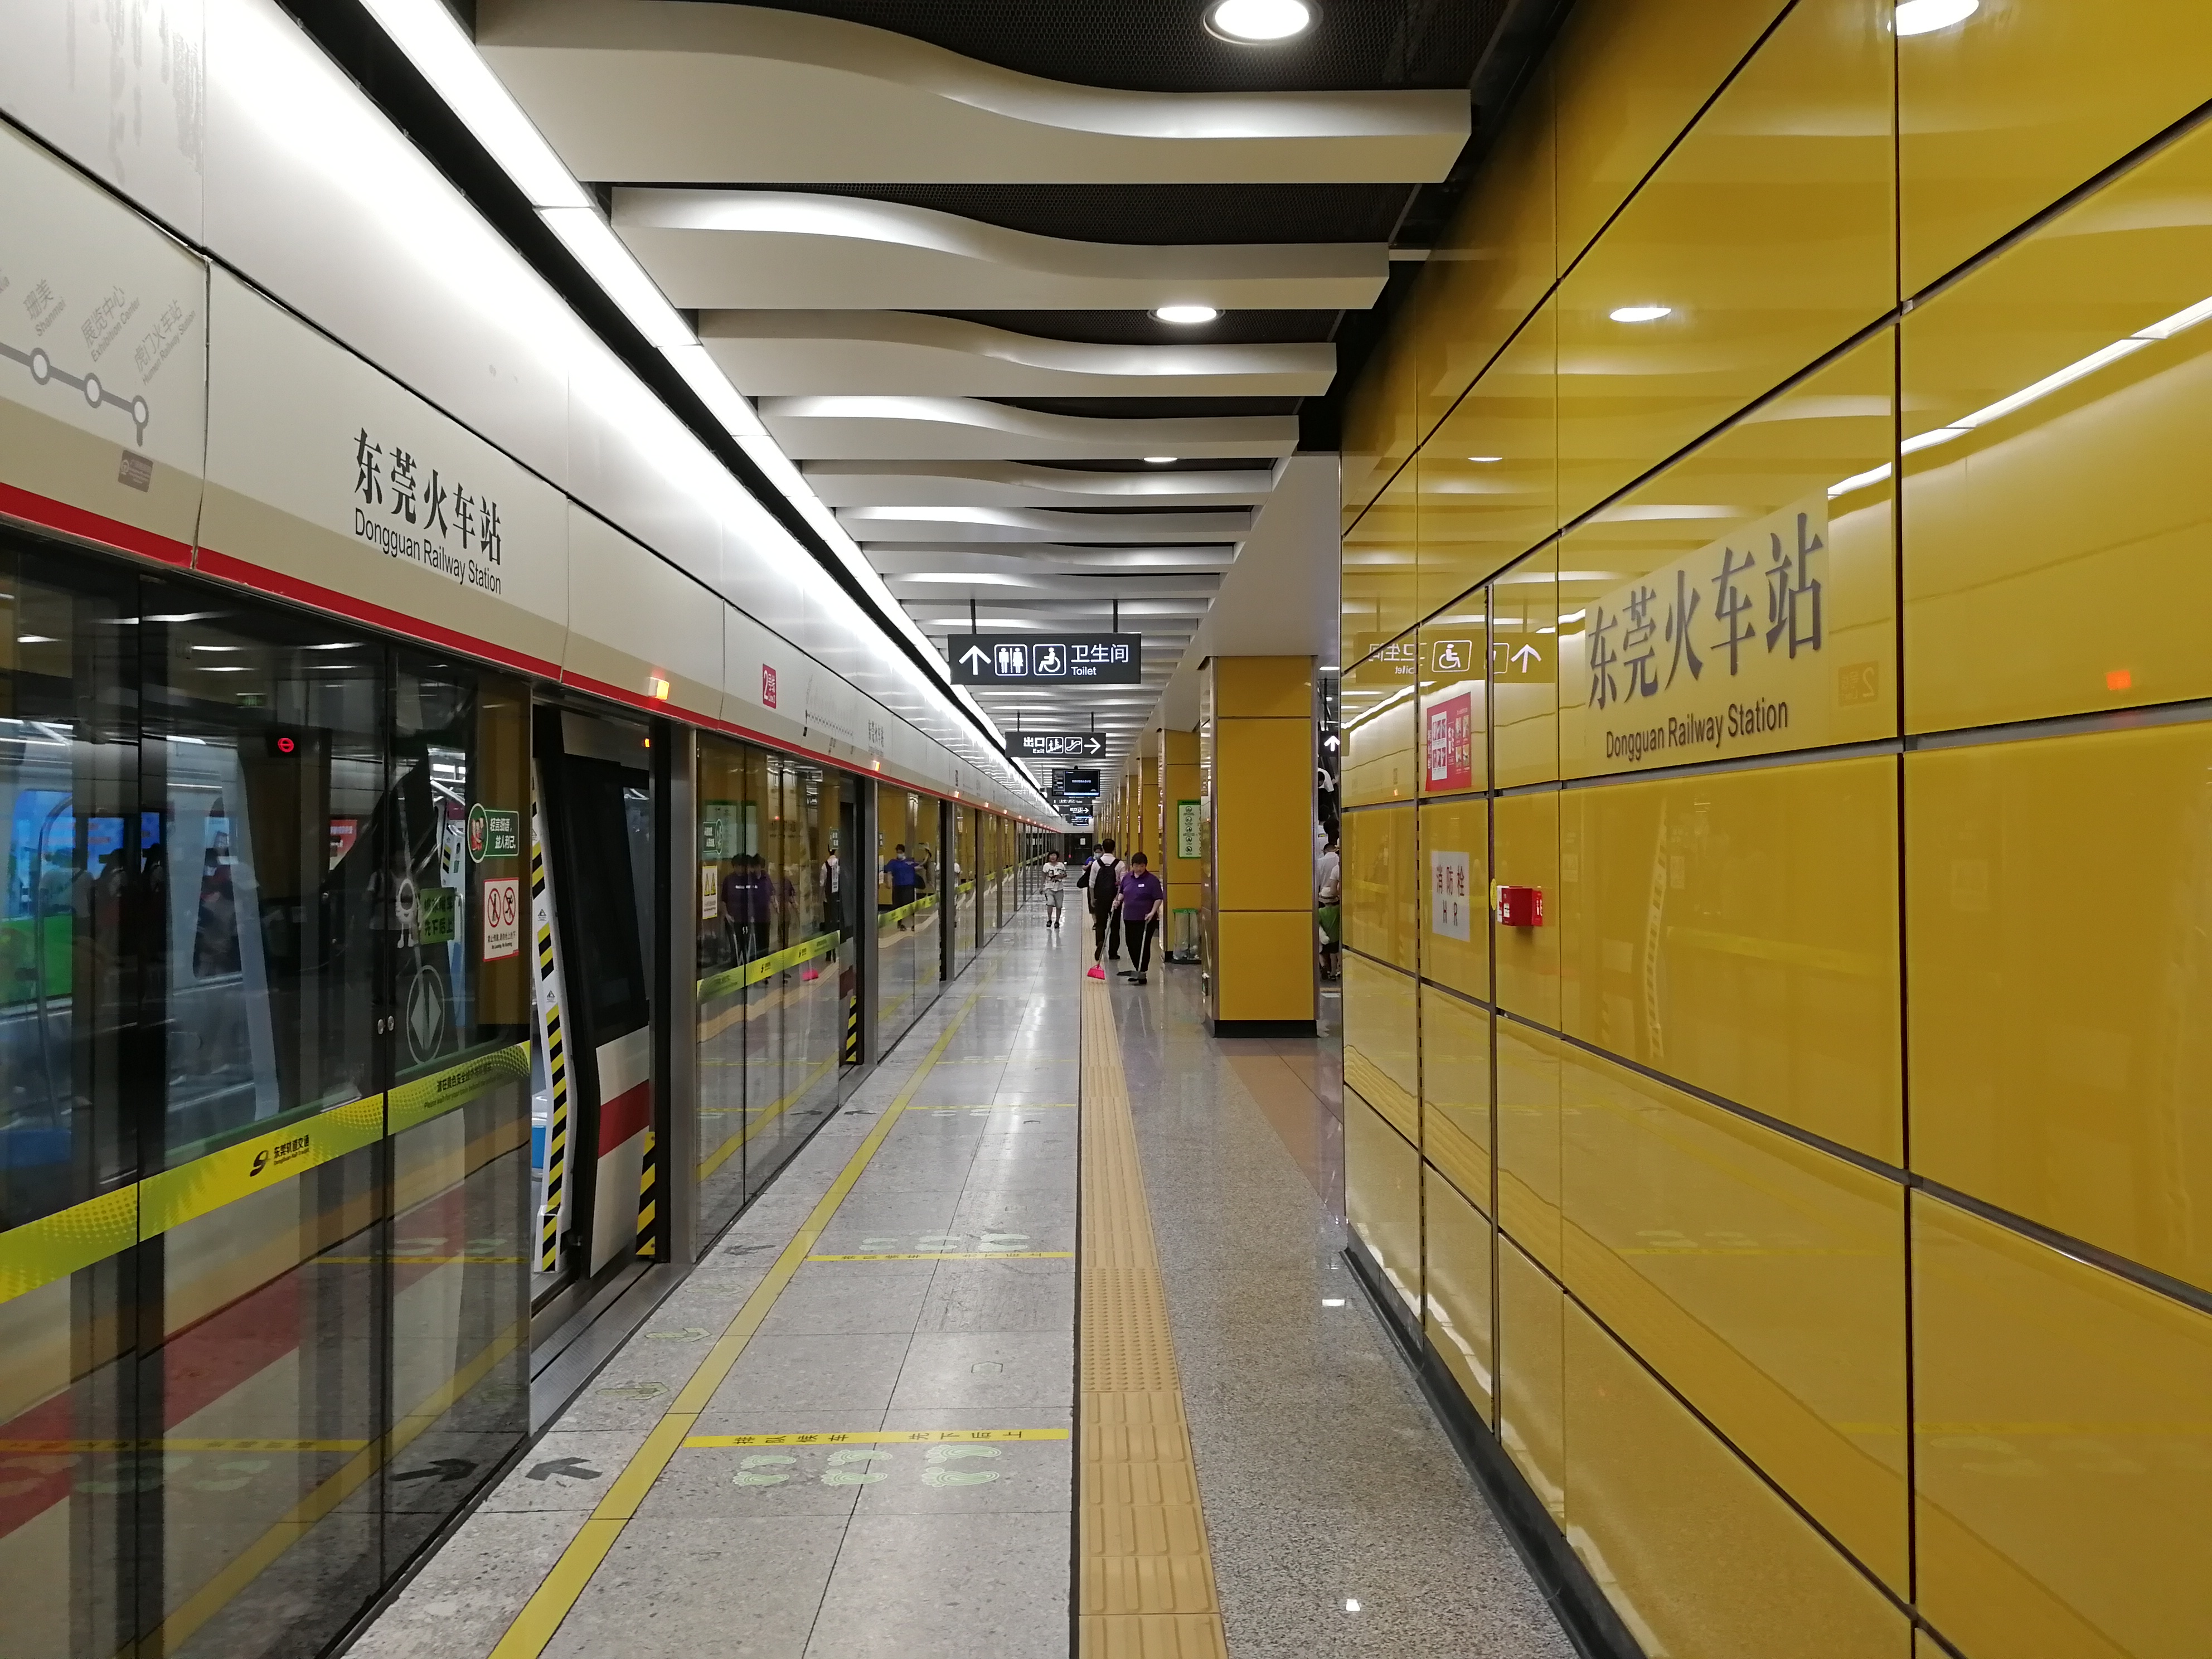 東莞軌道交通2號線地下站台